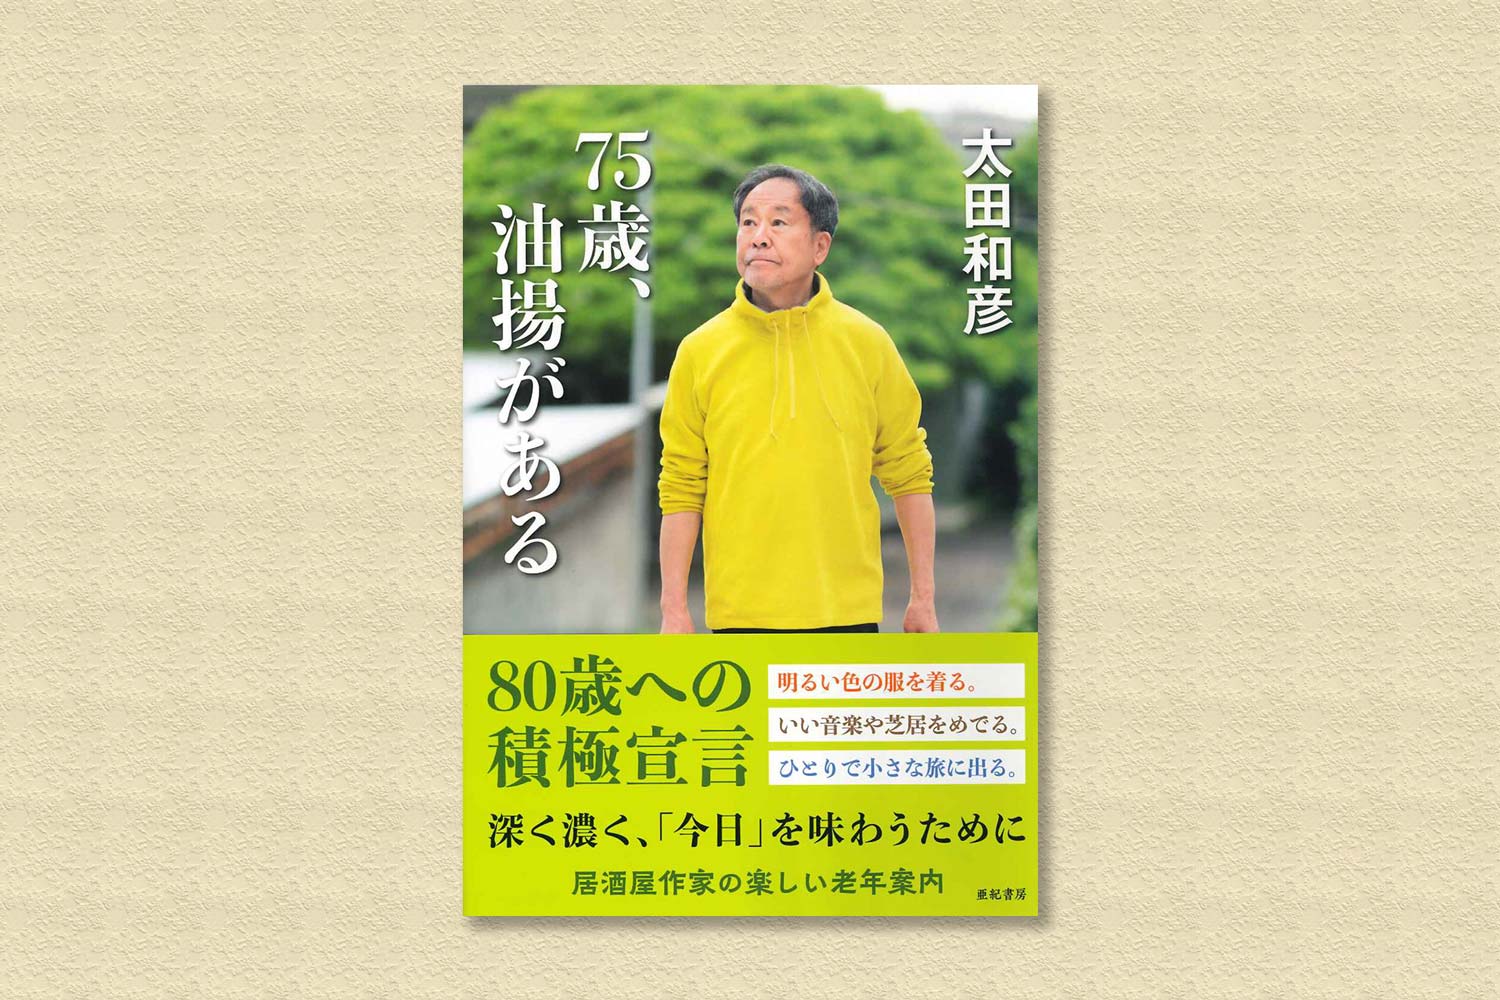 太田和彦 新著「75歳、油揚げがある」（亜紀書房）